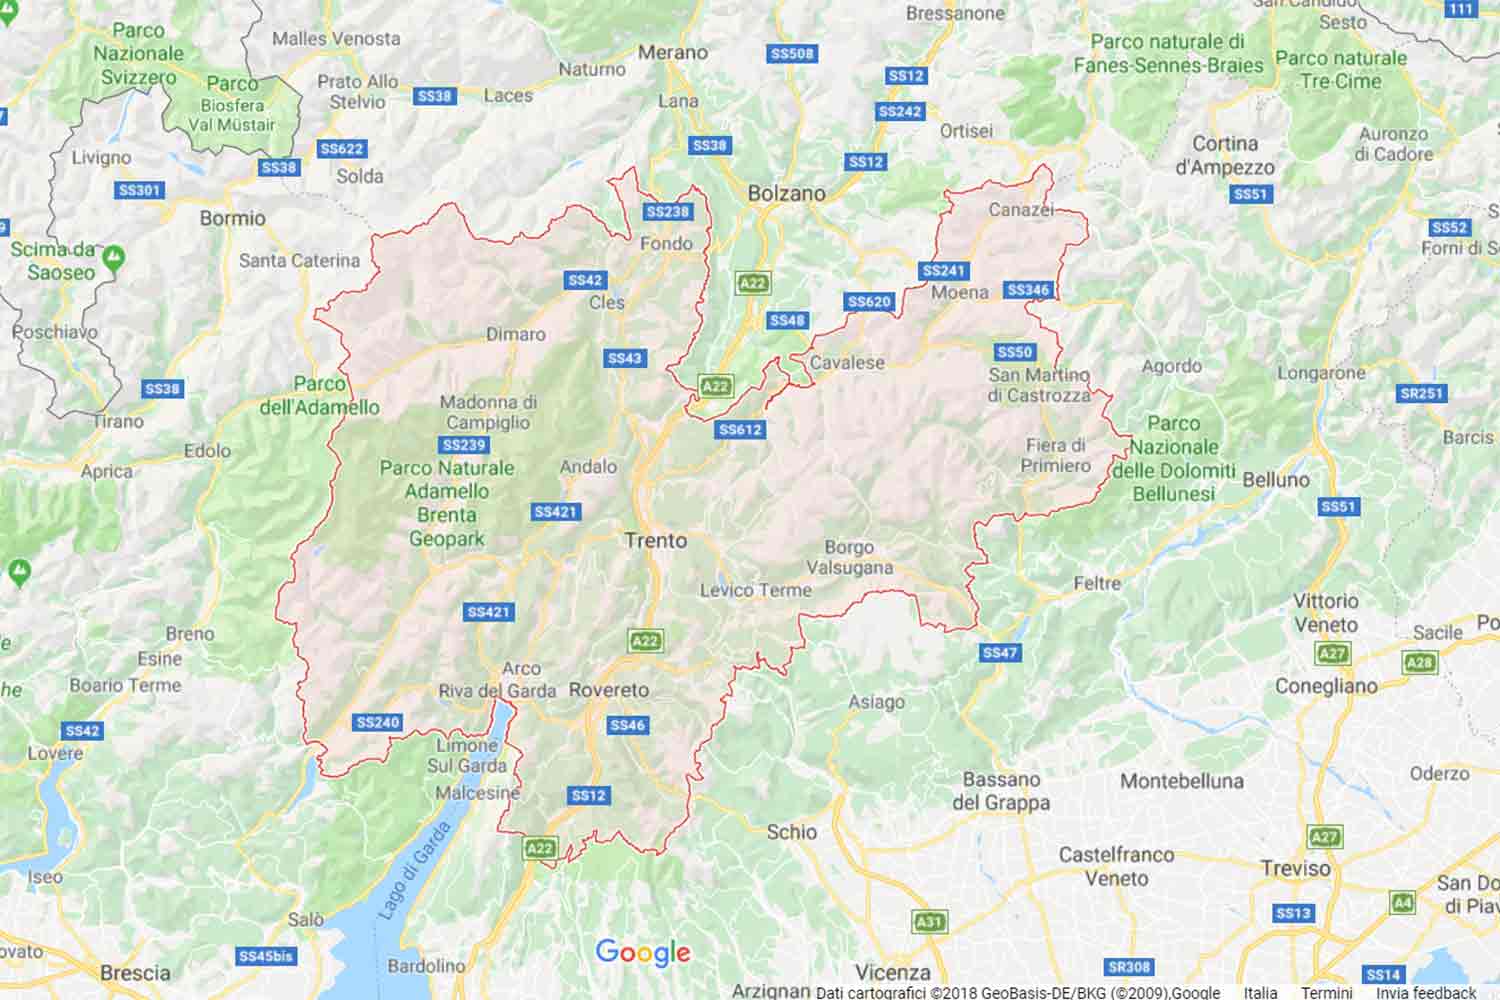 Trentino - Trento - Giovo Preventivi Veloci google maps